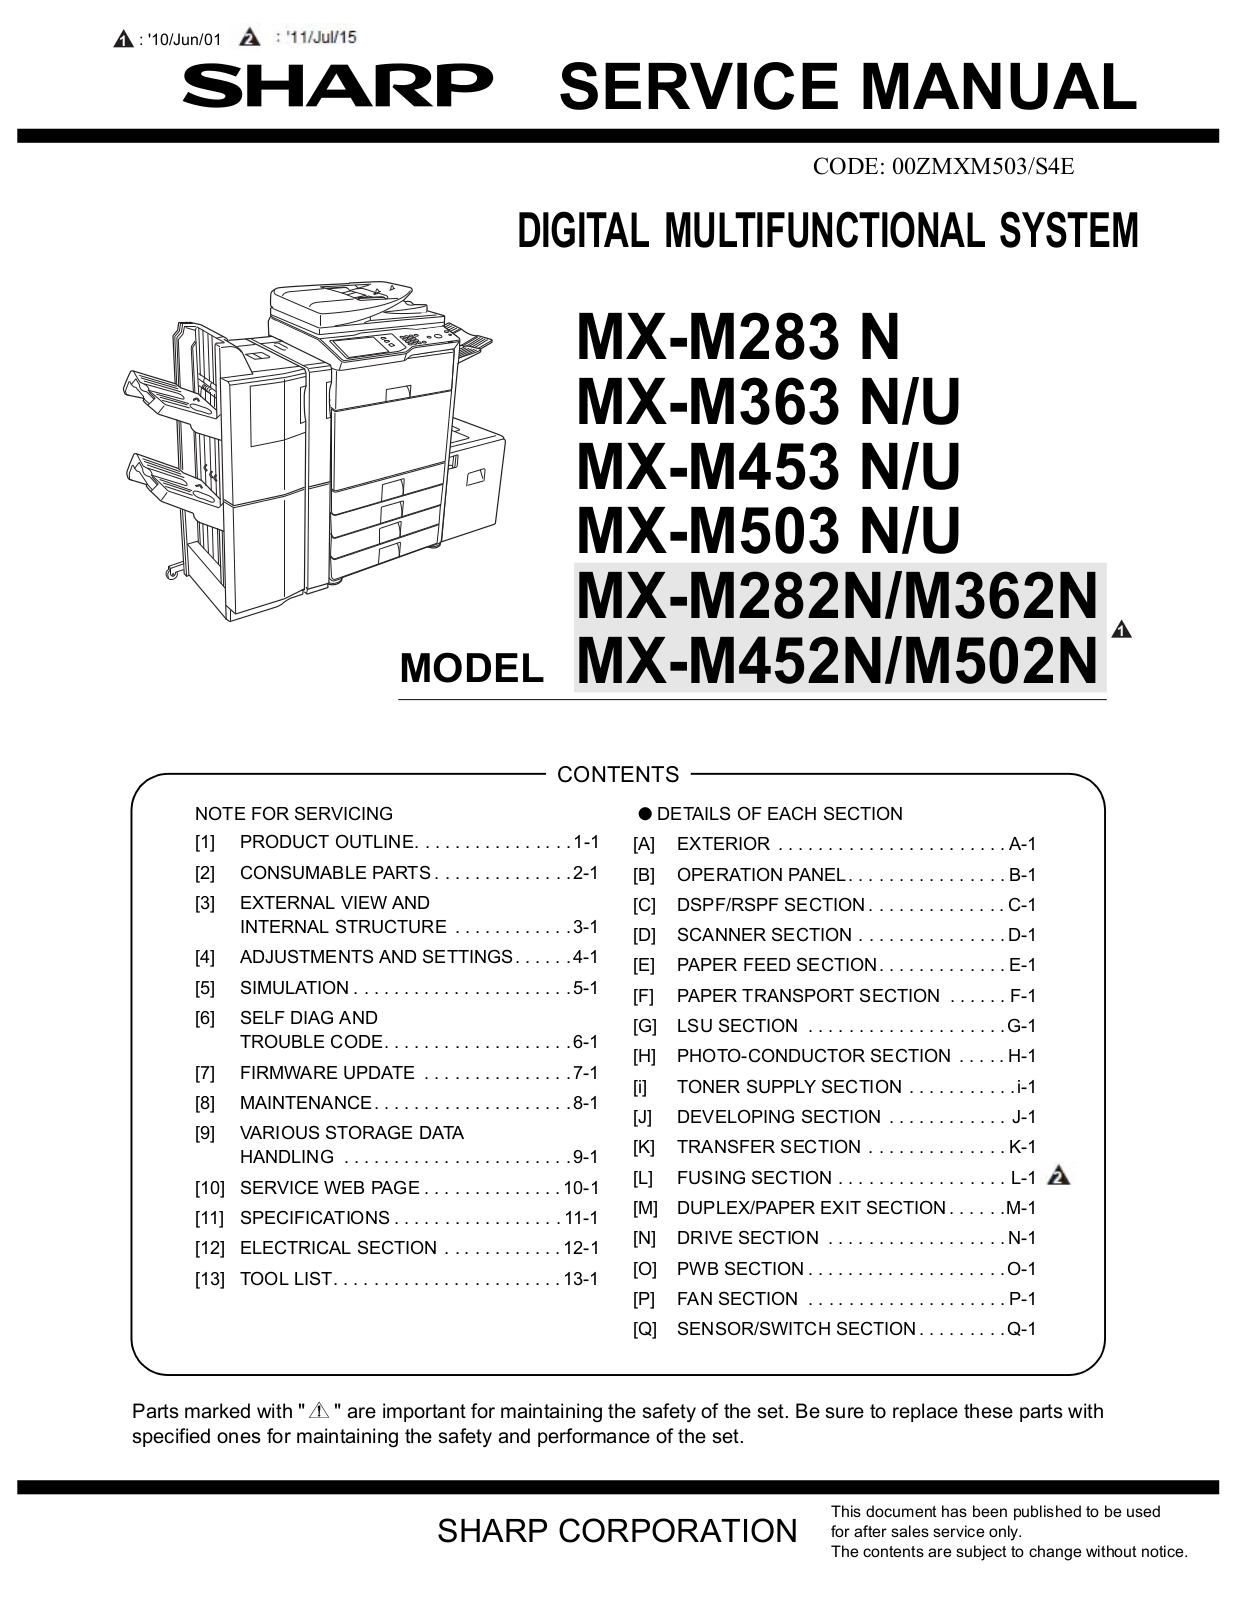 Sharp MX-M282N, MX-M362N, MX-M452N, MX-M502N Service Manual